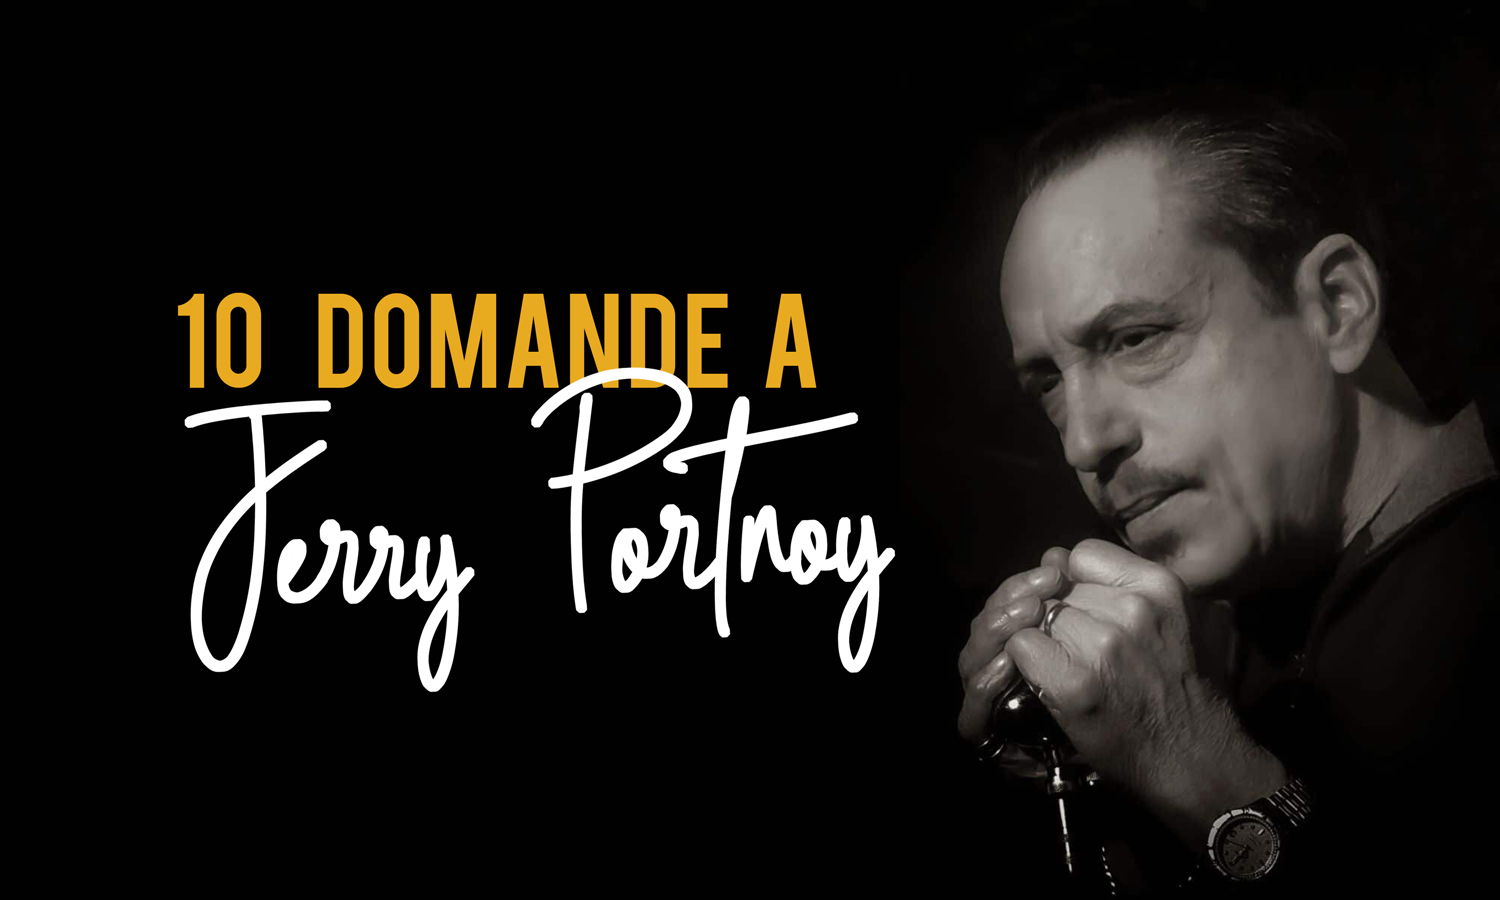 10 Domande a Jerry Portnoy